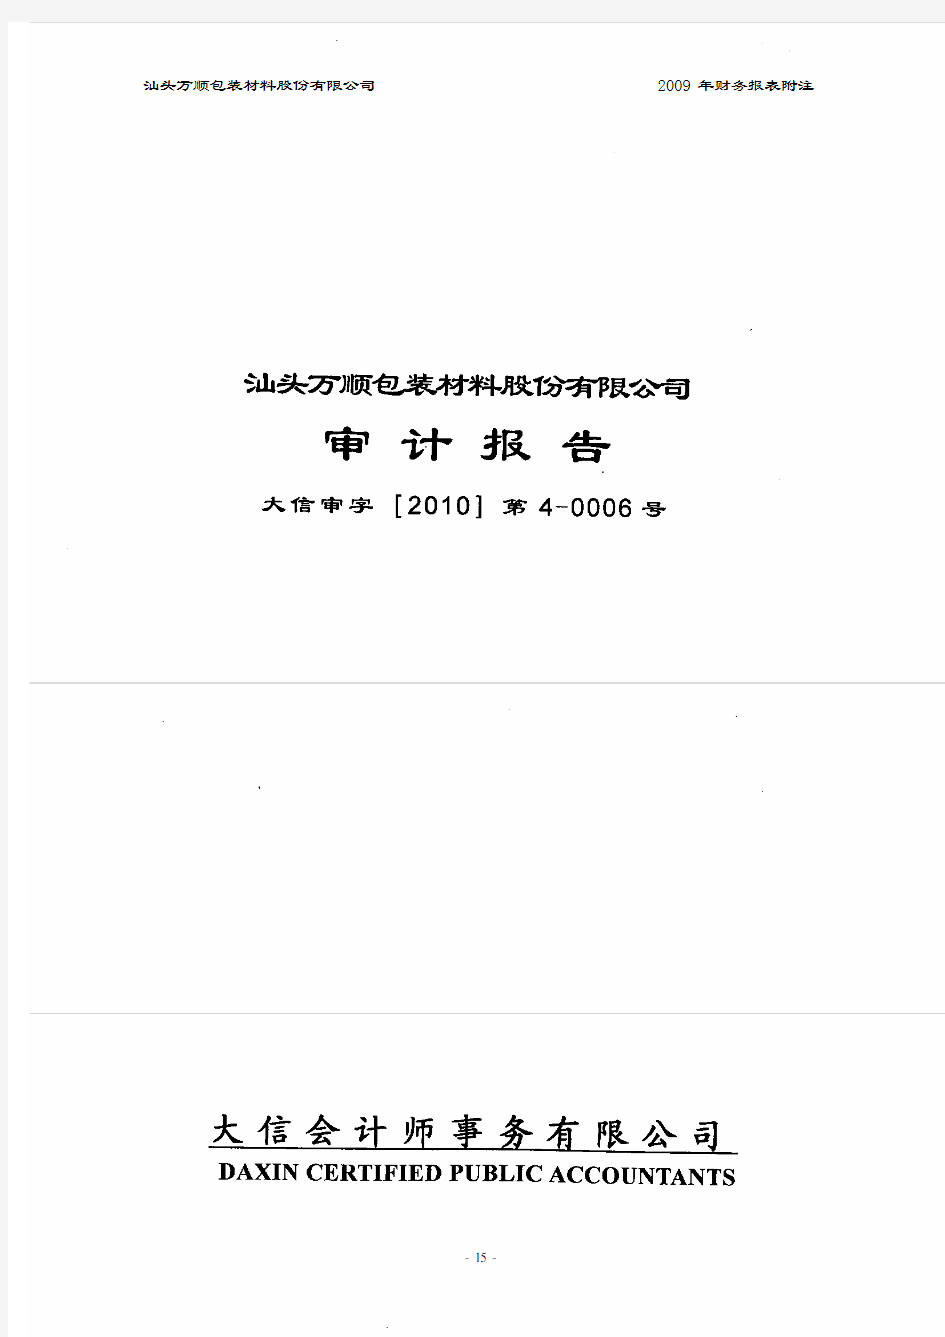 汕头万顺包装材料股份有限公司2009年财务报表附注